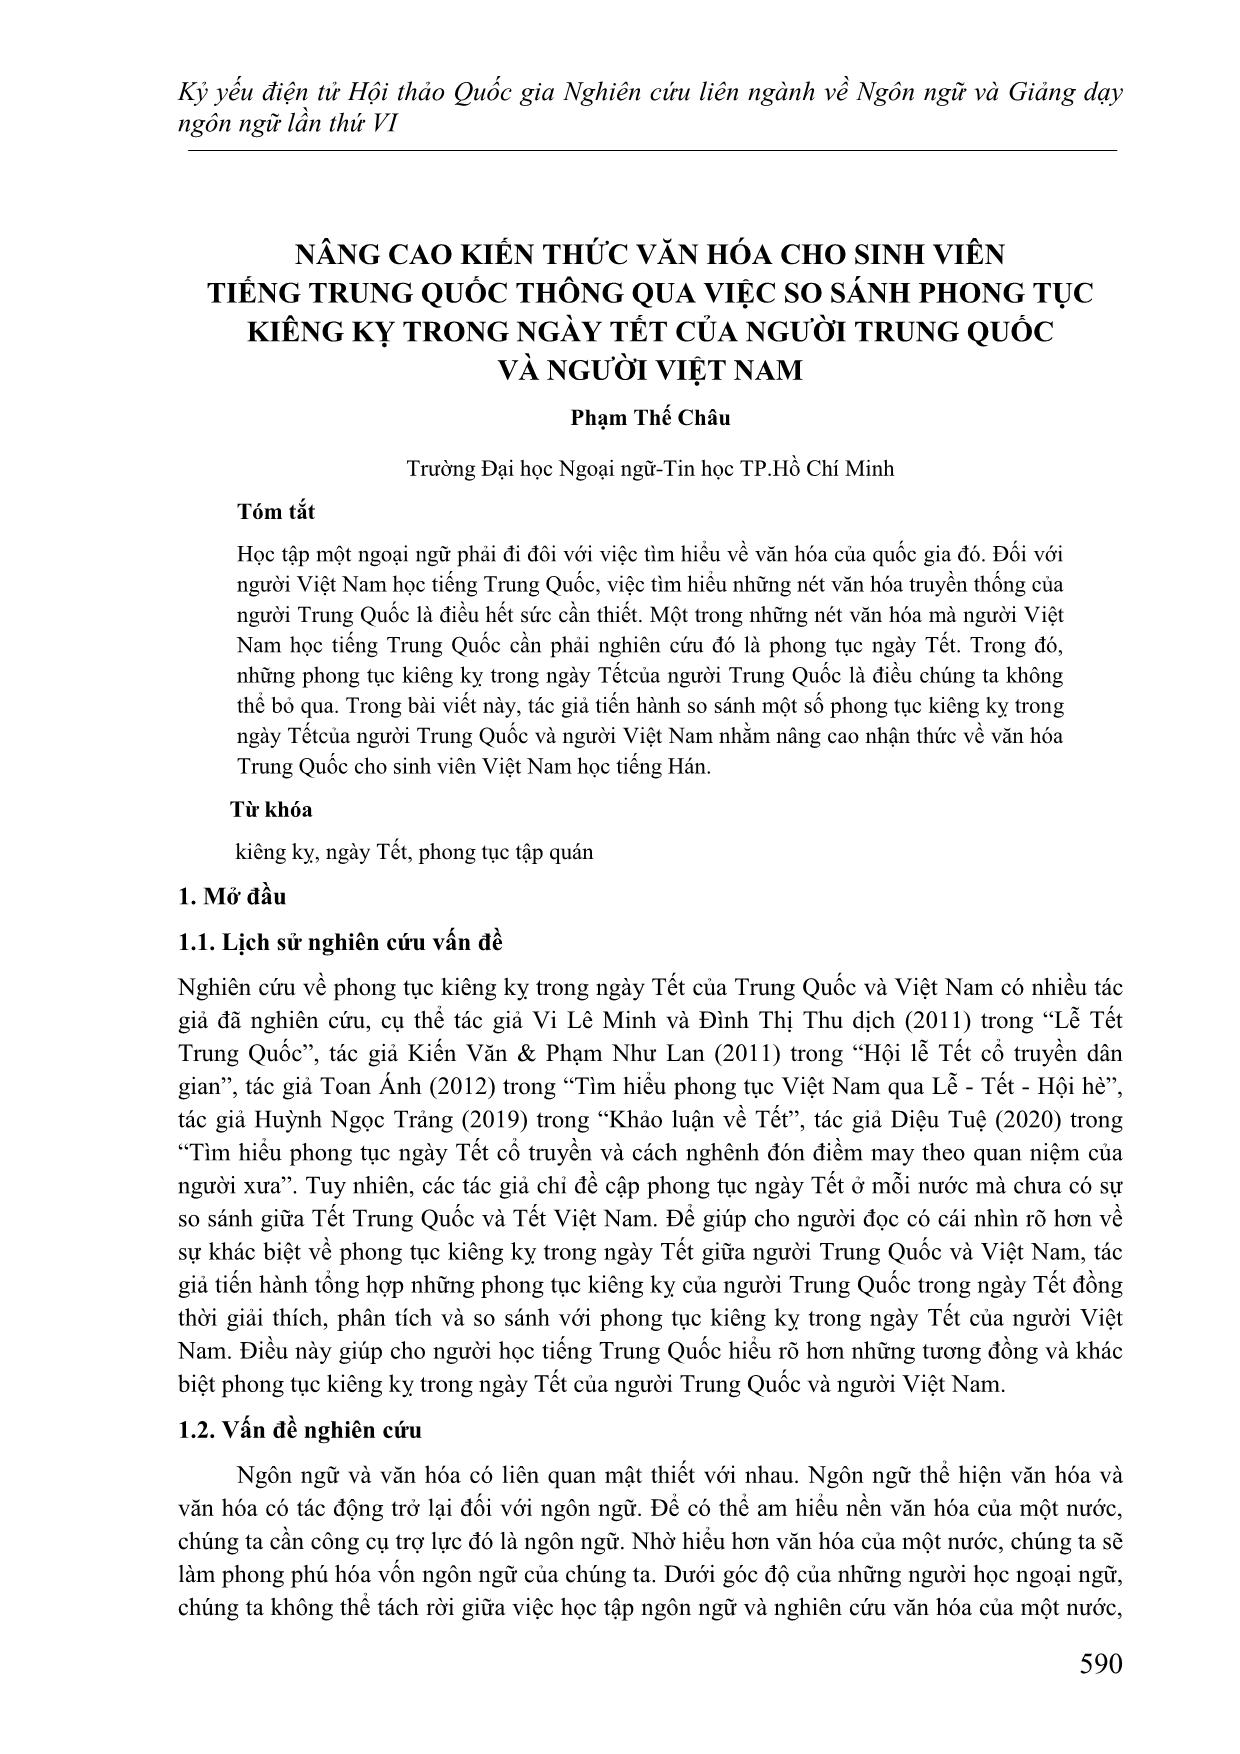 Nâng cao kiến thức văn hóa cho sinh viên tiếng Trung Quốc thông qua việc so sánh phong tục kiêng kỳ trong ngày Tết của người Trung Quốc và người Việt Nam trang 1